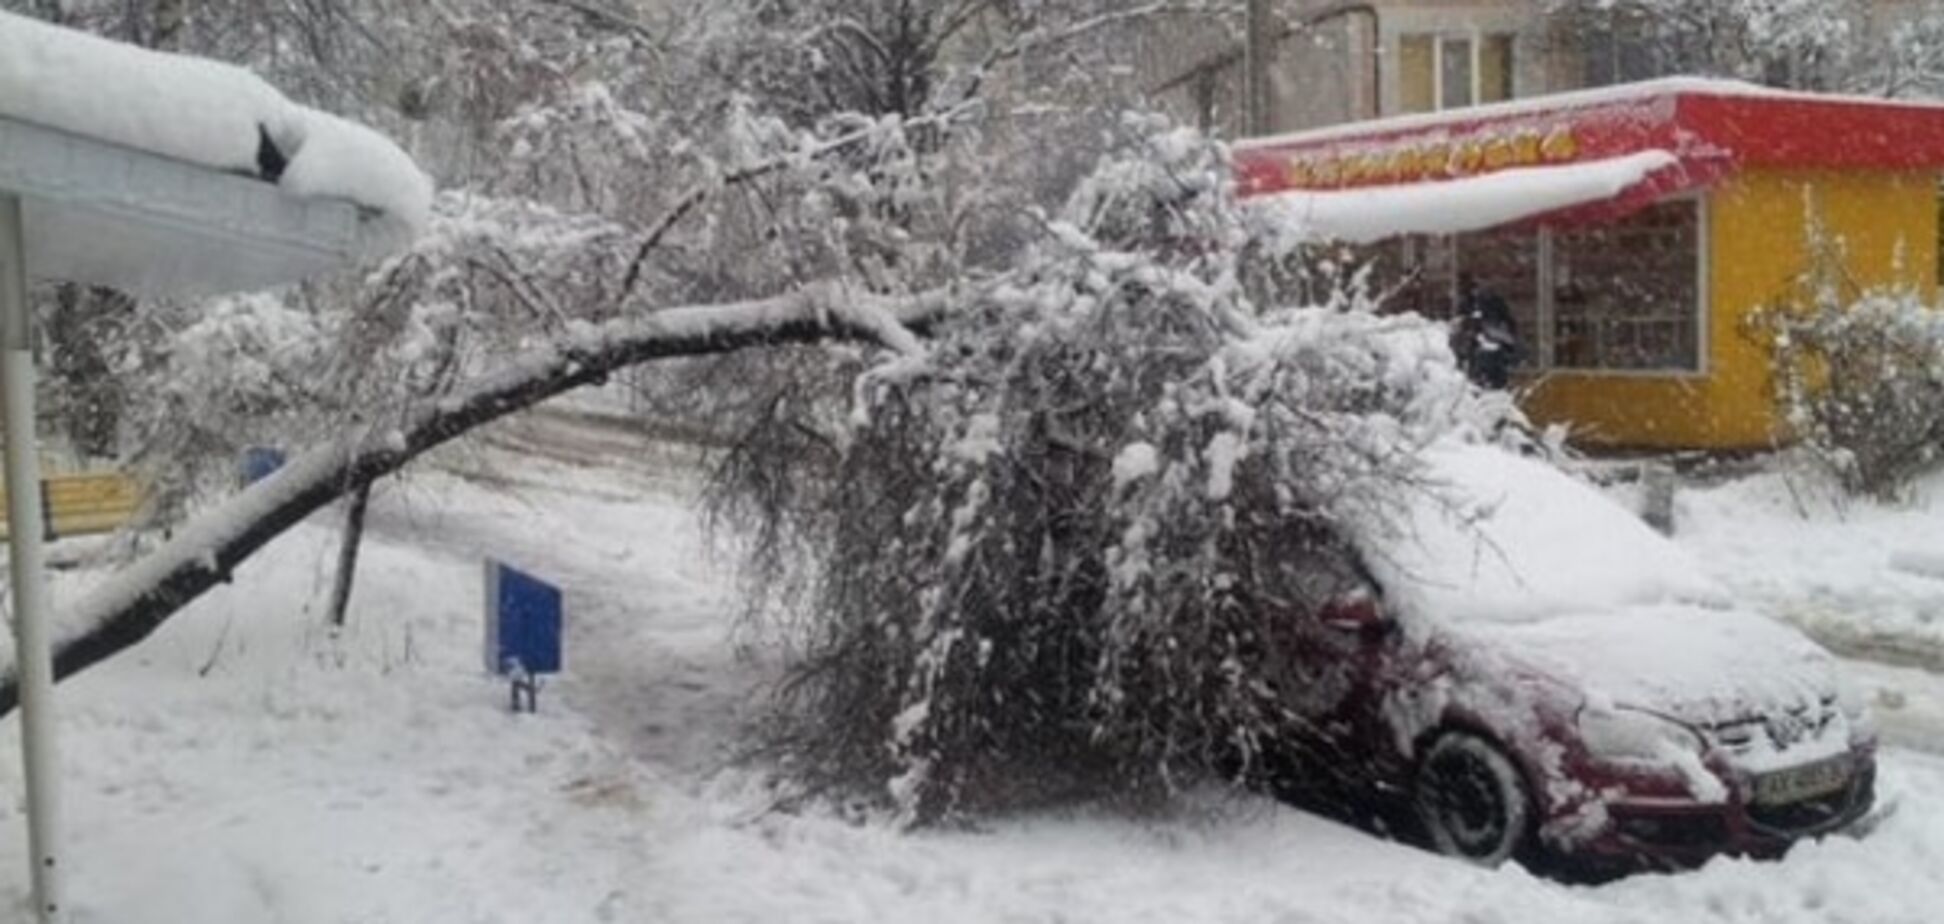 Буря в Харькове: снег принес 'конец света' и повалил 500 деревьев. Фото стихии